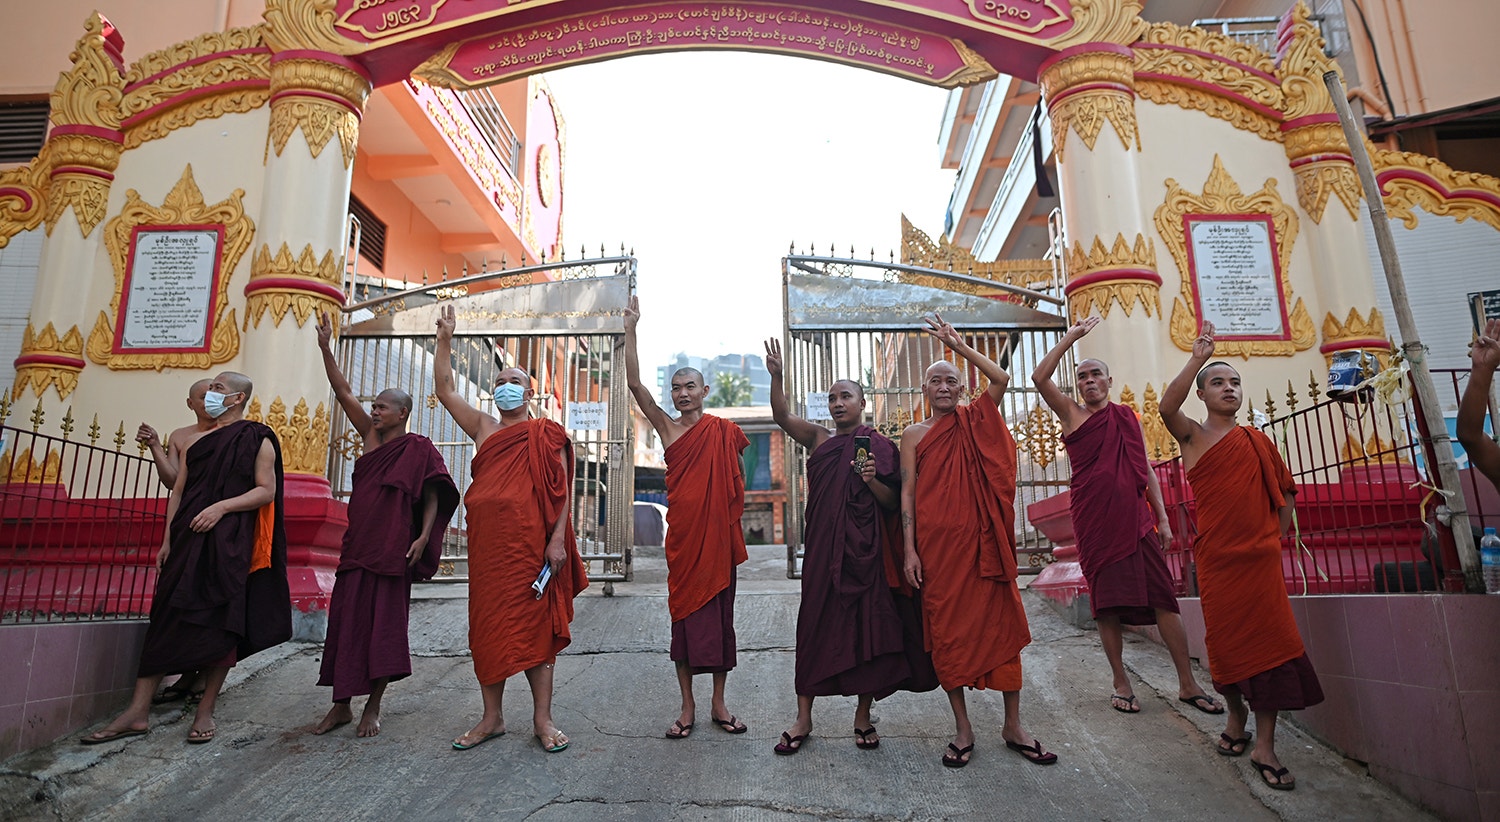  Monges budistas juntaram-se ao protesto contra o golpe militar | Foto: Reuters 